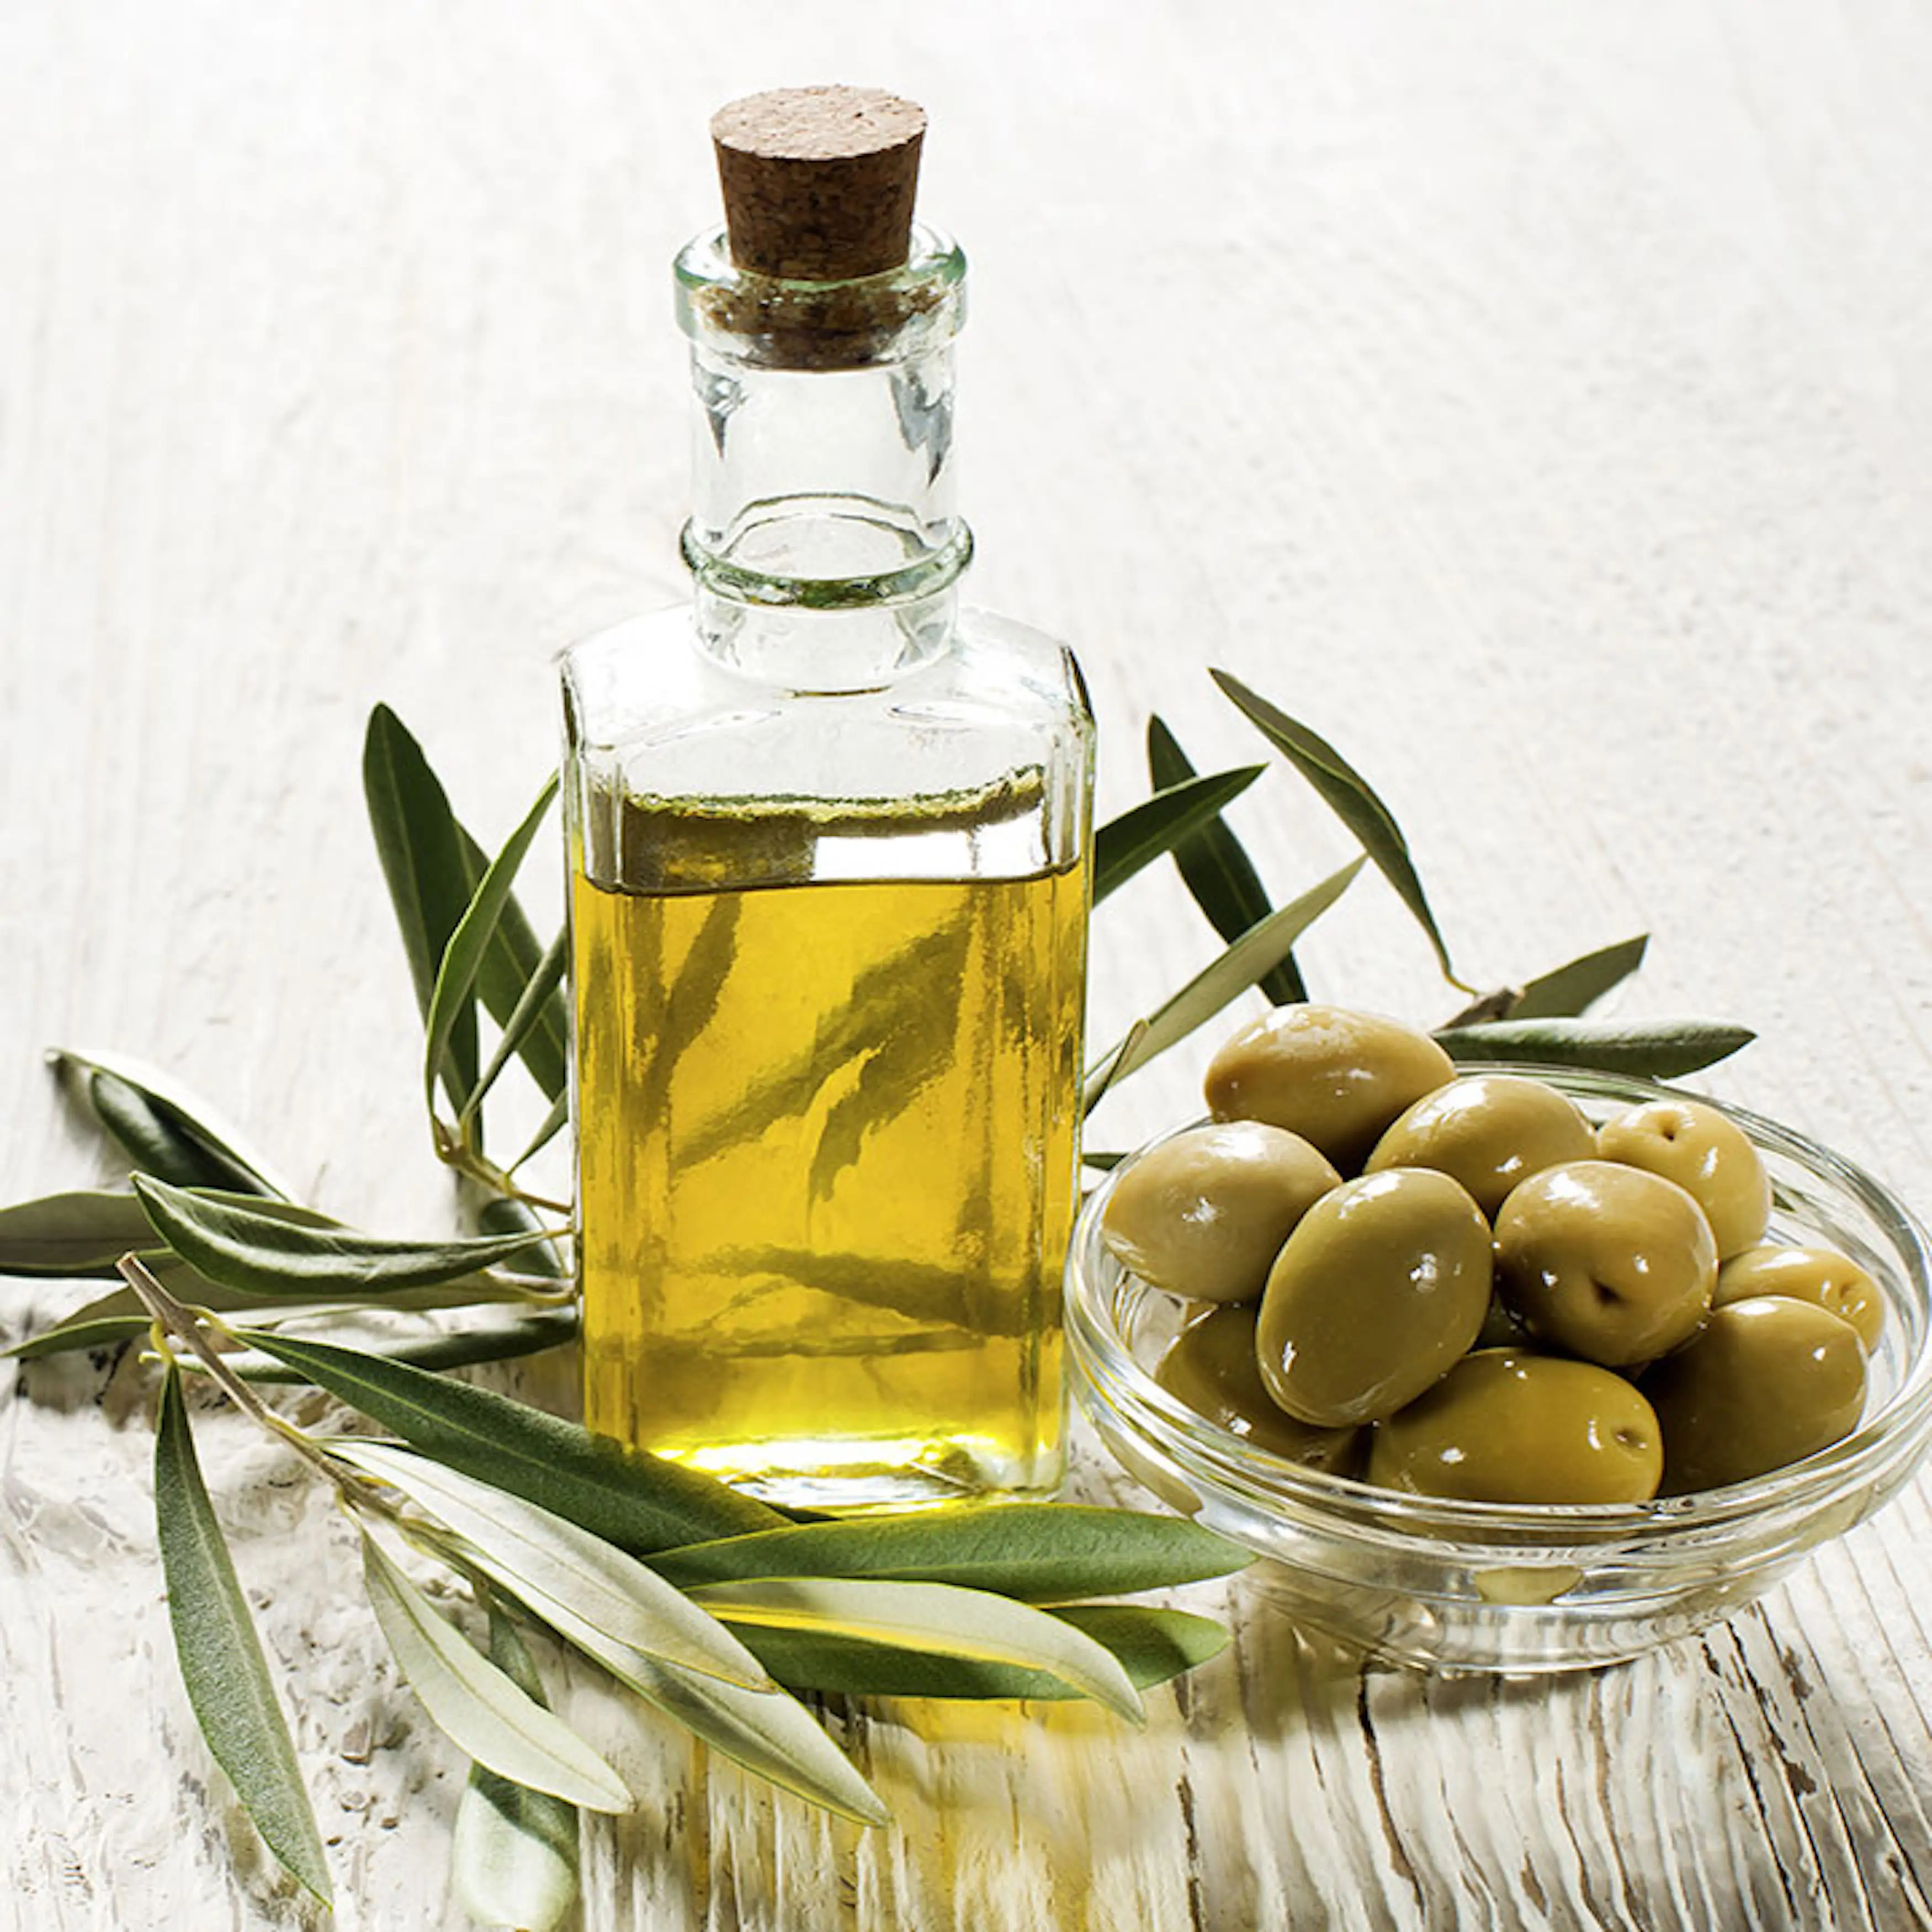 Acquista all'ingrosso di olio d'oliva biologico di alta qualità